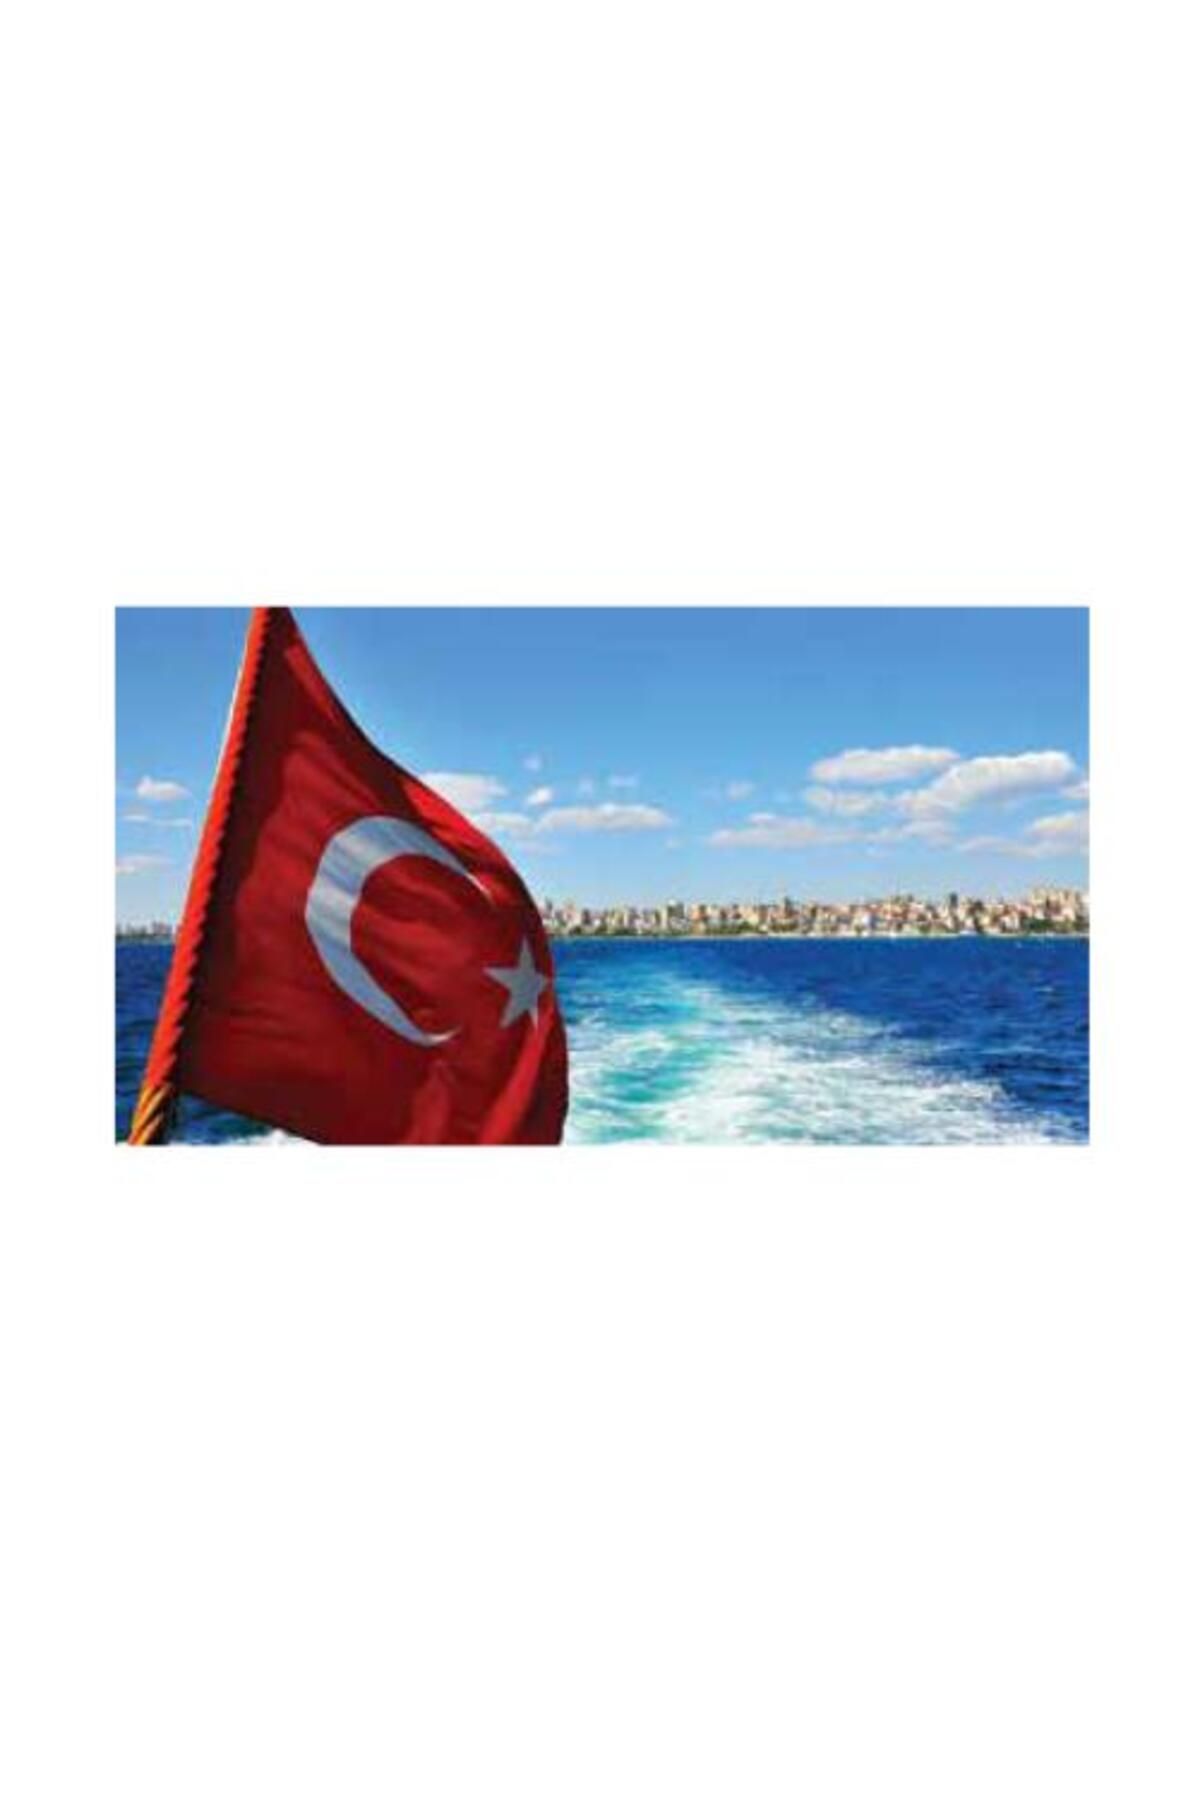 KALE Türk Bayrağı 30x45cm